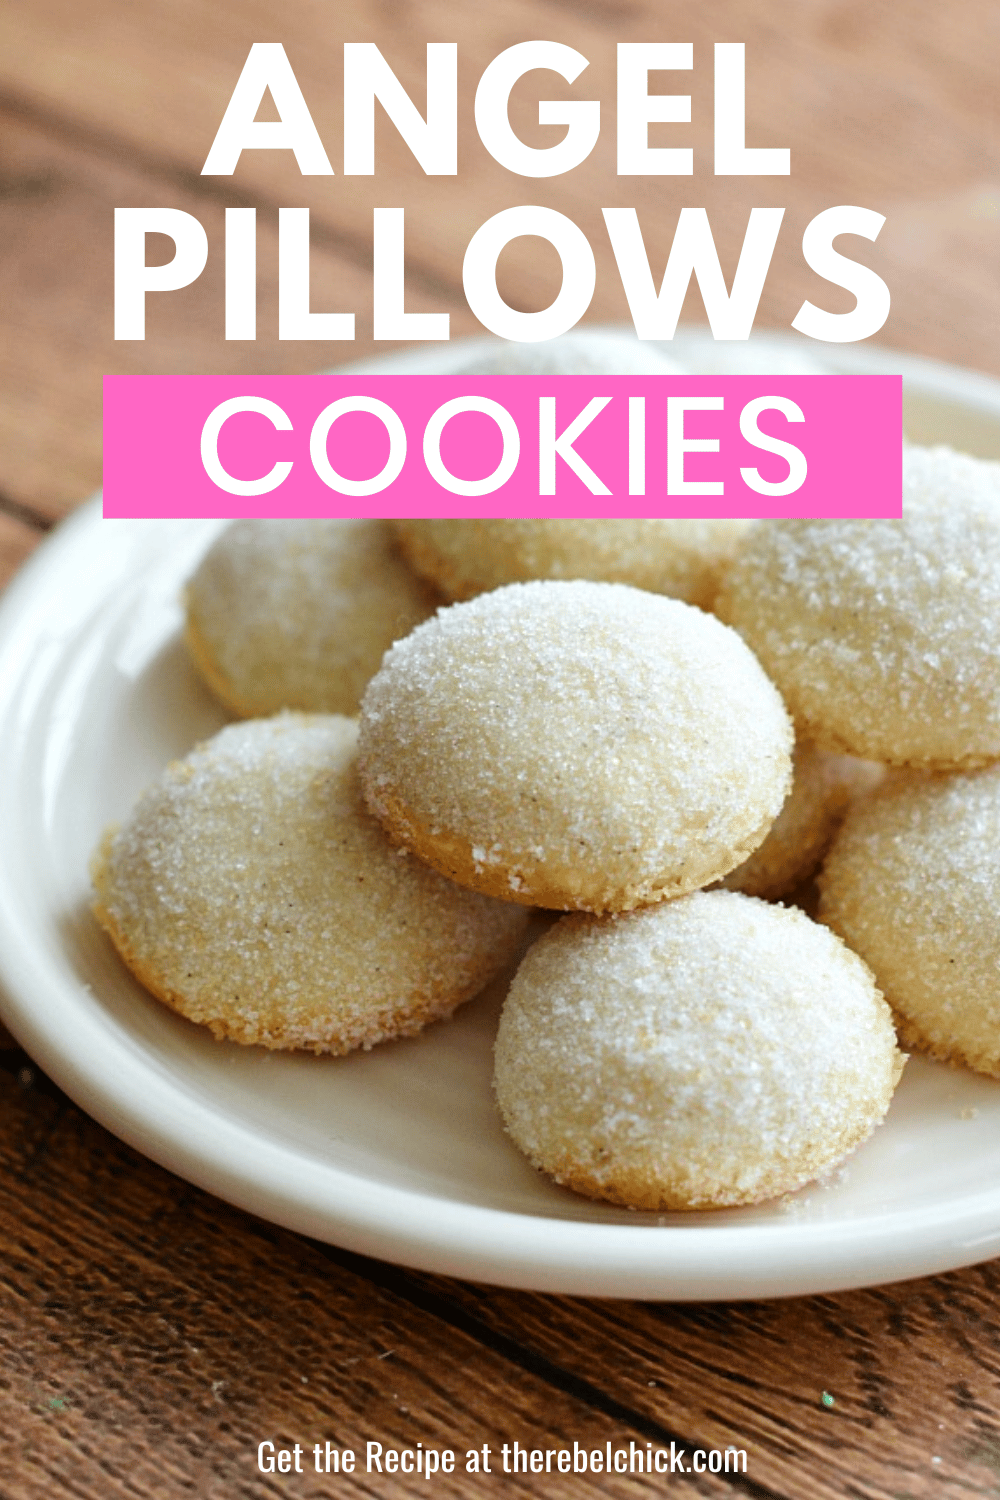 Pillow Cookies